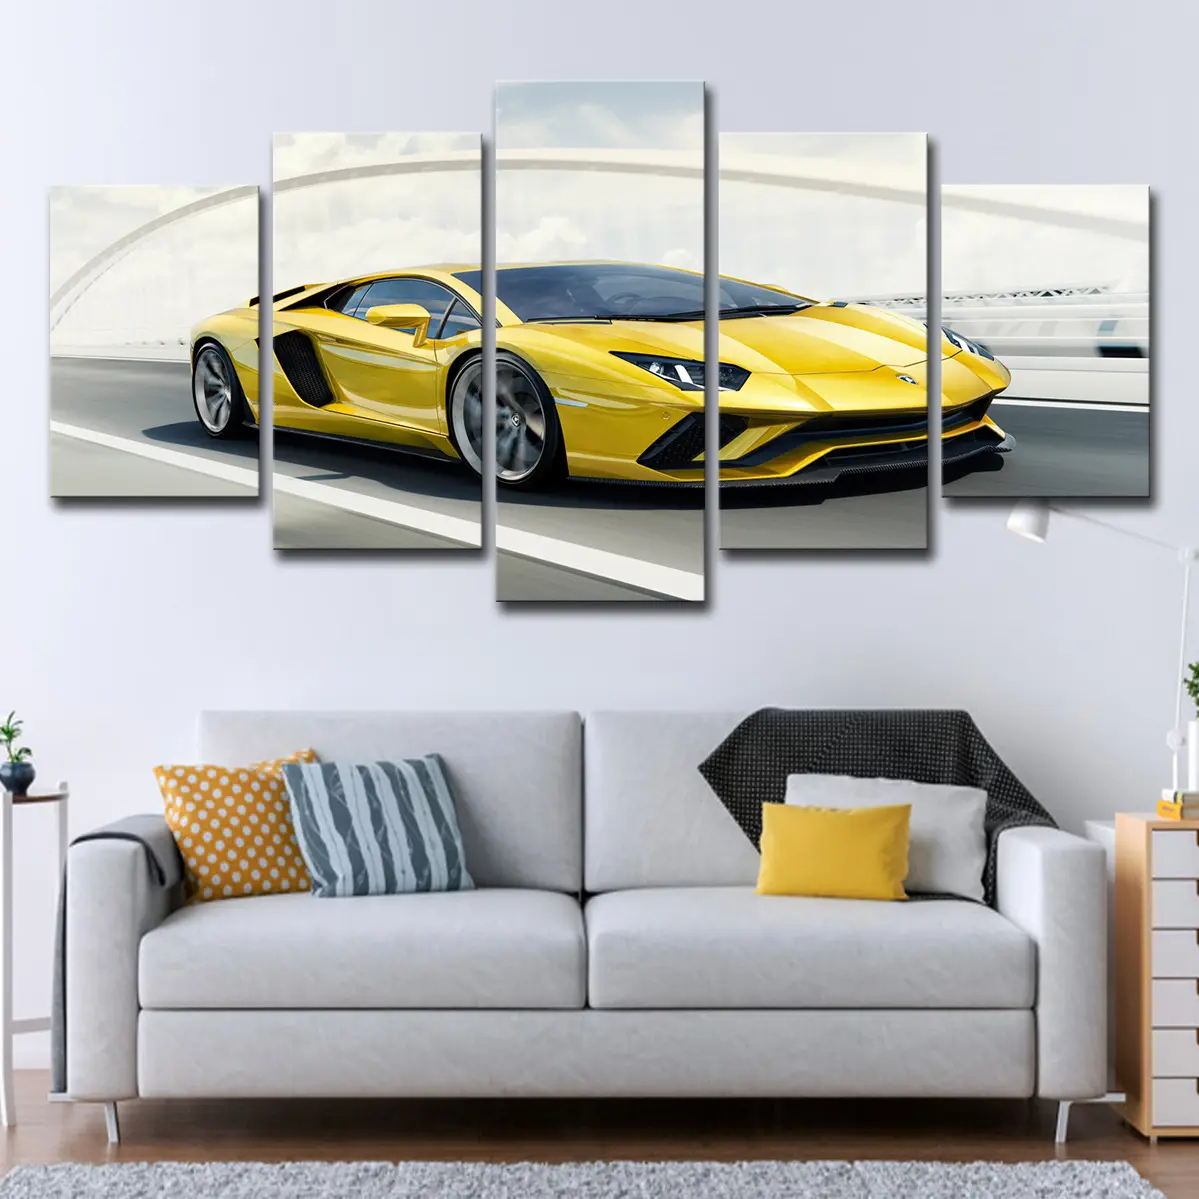 5 pannelli ad alta risoluzione Sport Super Car giallo Lamborghini in poliestere con stampa artistica a prova di acqua